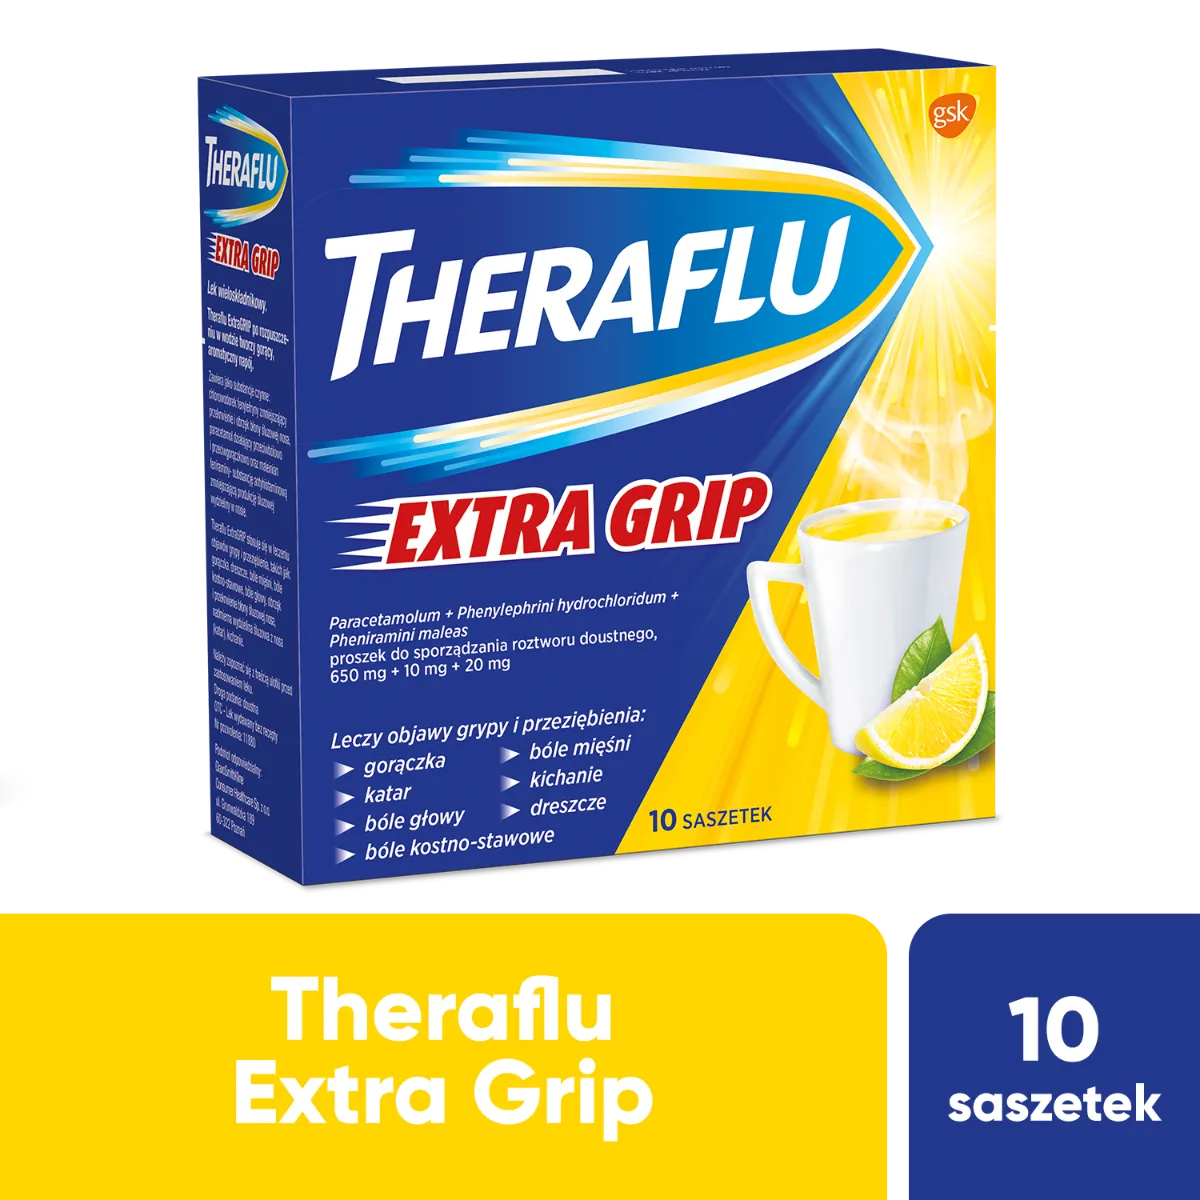 Theraflu Extra Grip, 650 mg + 10 mg + 20 mg, 10 saszetek 